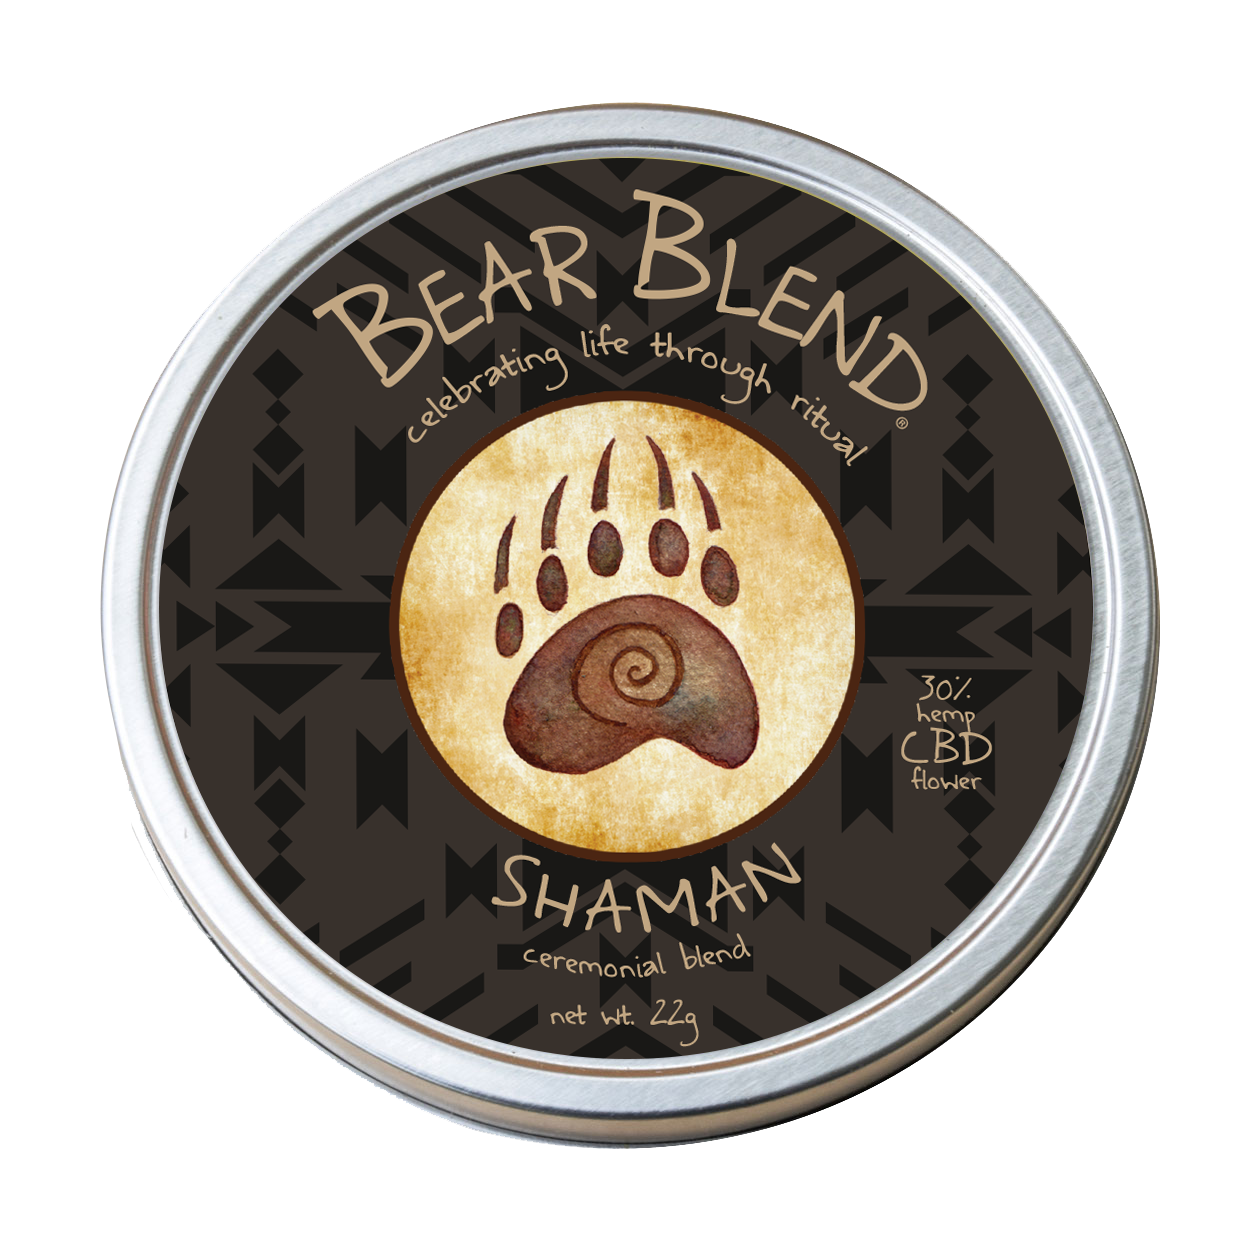 Bear Blend: Shaman Ceremonial Blend — CBD Flower